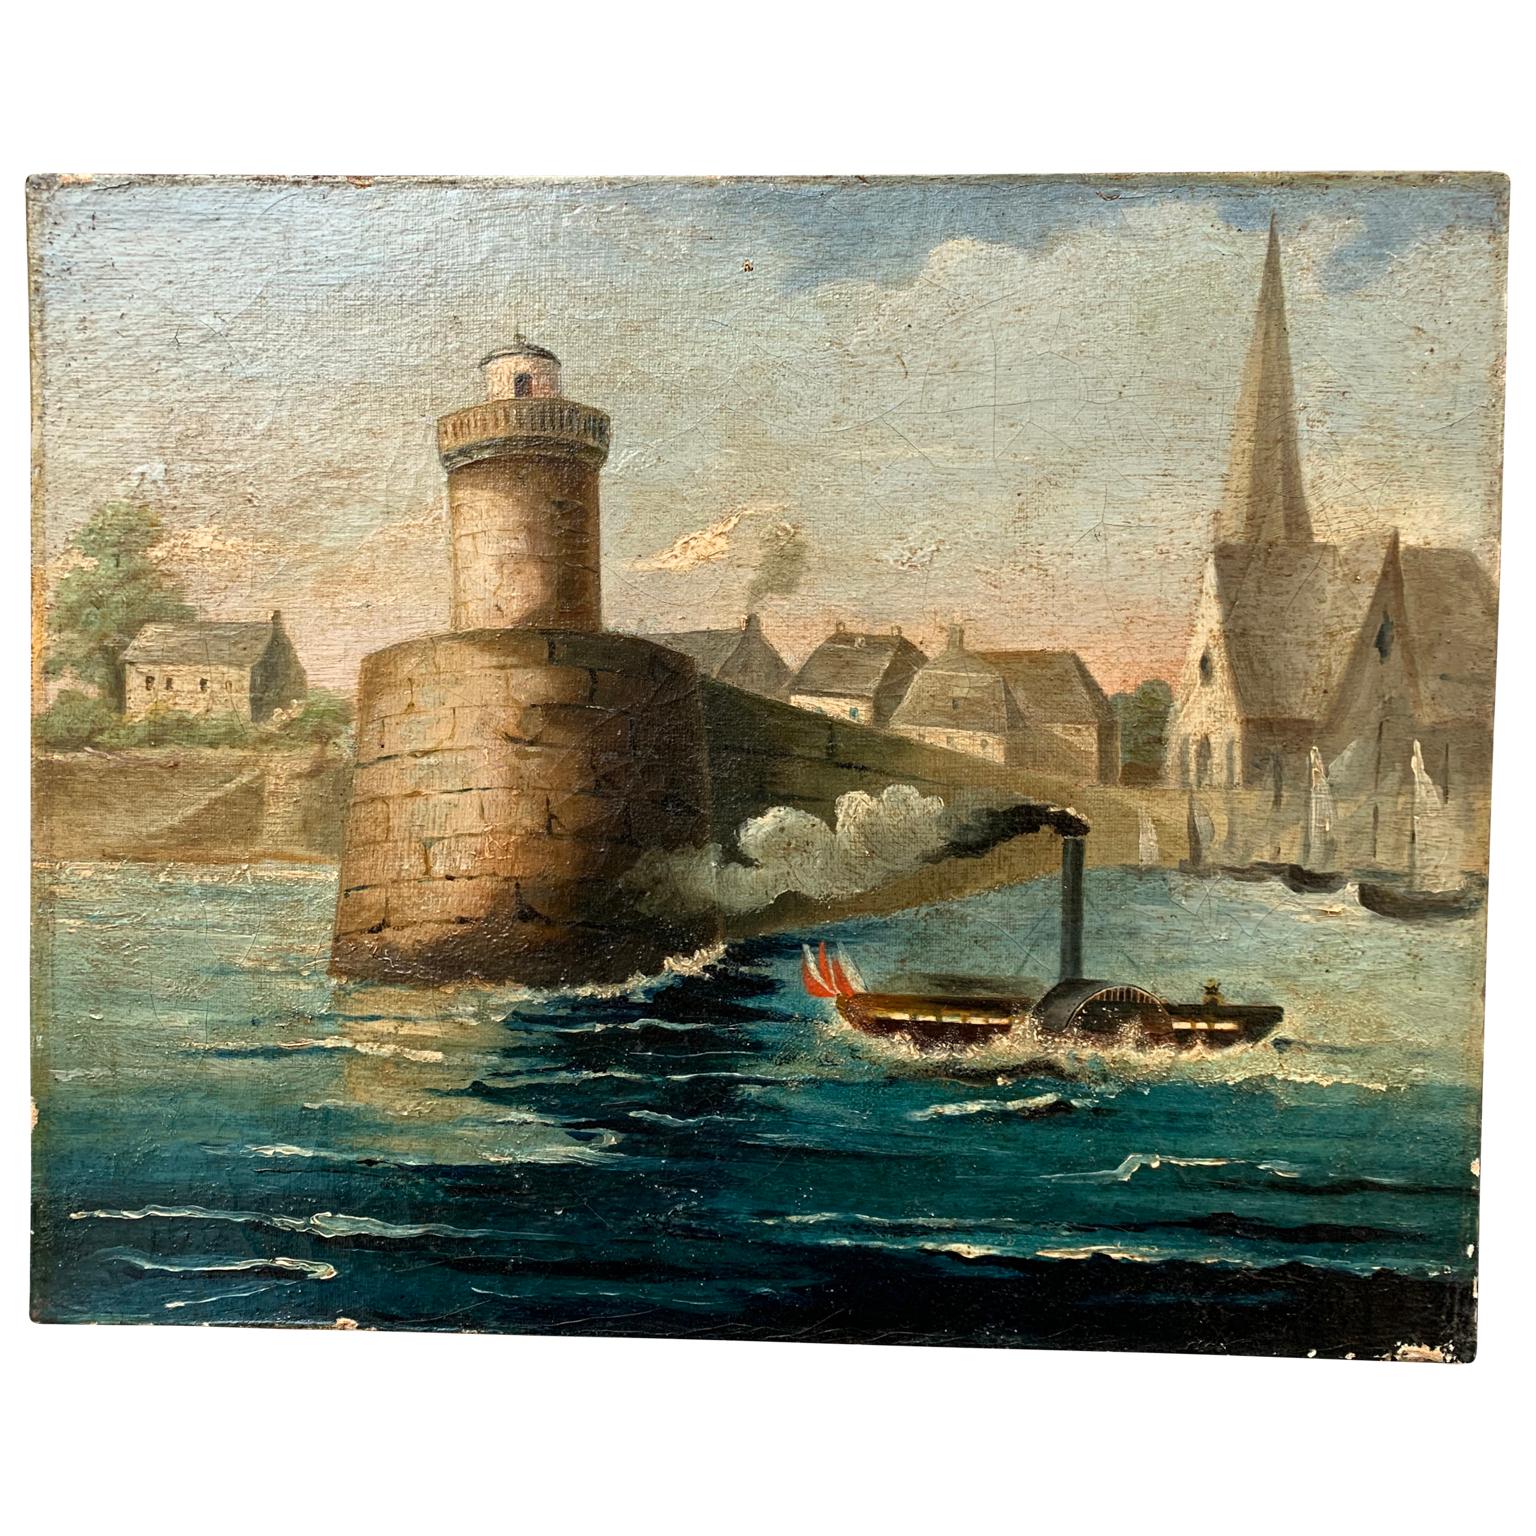 Une peinture à l'huile du 19ème siècle avec un cadre original en argent. Il représente très probablement le grand fleuve Garonne à Toulouse, en France.
La Garonne était célèbre pour son intense trafic de bateaux à vapeur.

  